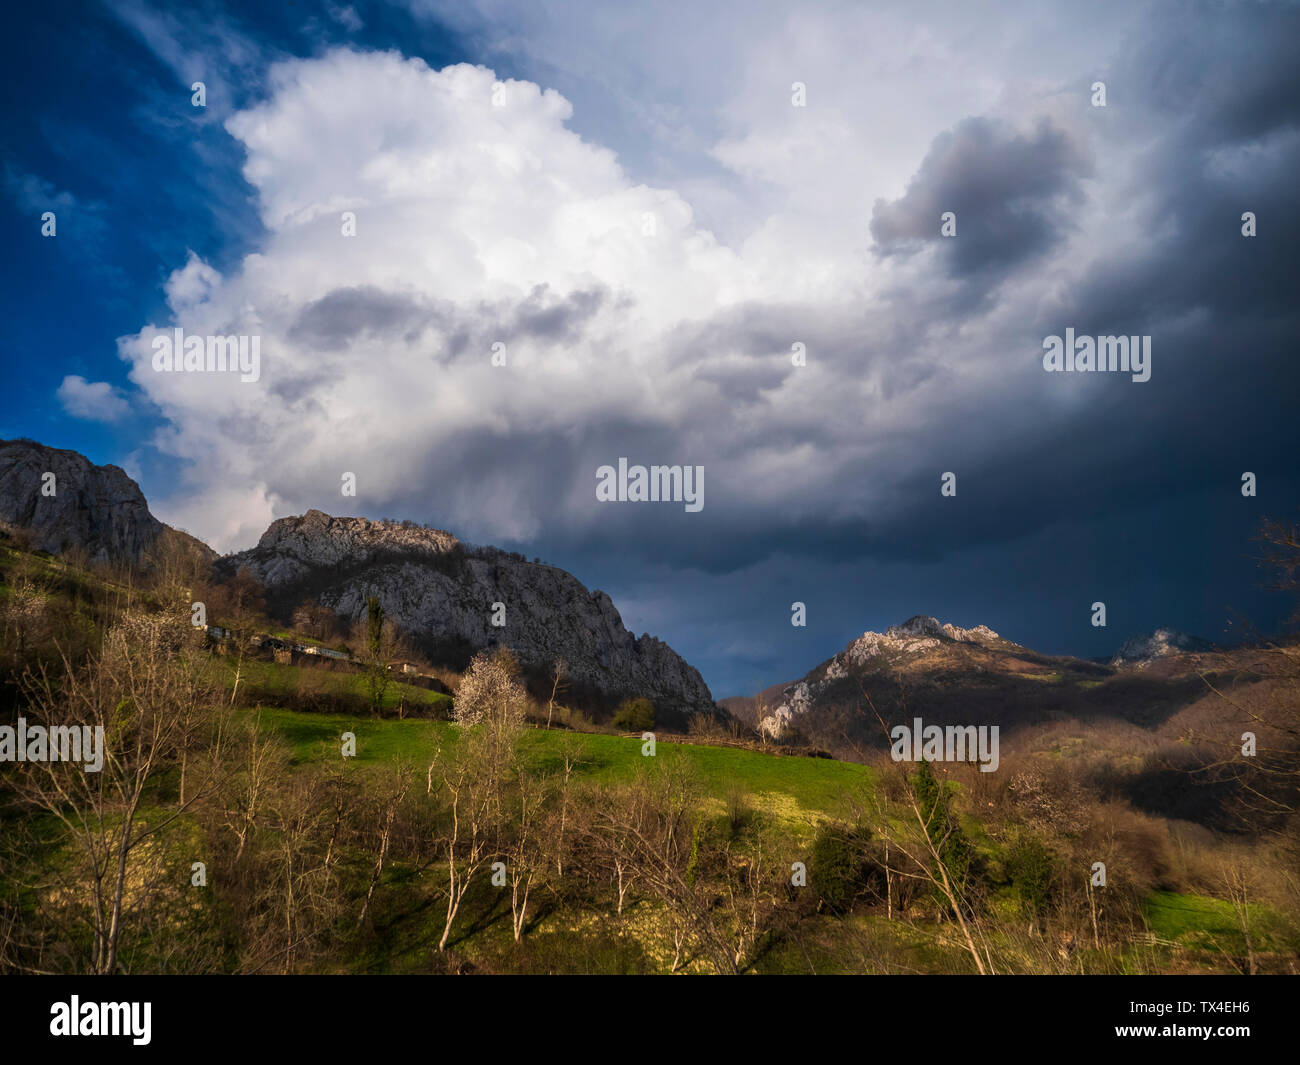 L'Espagne, Asturies, monts Cantabriques, mountainscape avec des nuages Banque D'Images